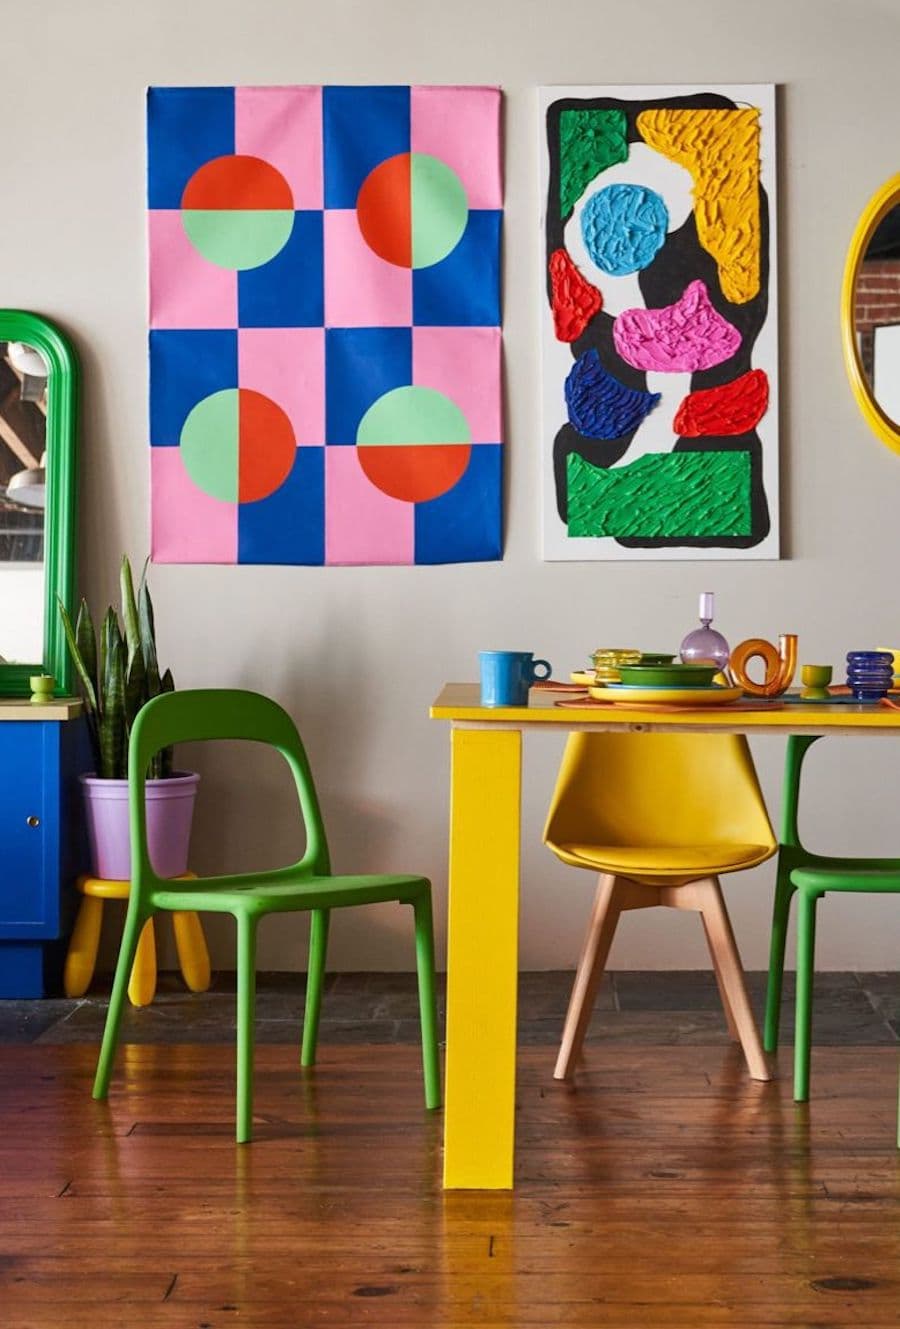 Comedor moderno, estilo dopamina. Mesa amarilla con dos sillas verdes y una estilo eames color amarillo. En el muro gris claro hay dos imágenes grandes con dibujos de colores abstractos y geométricos. El piso es de madera oscura